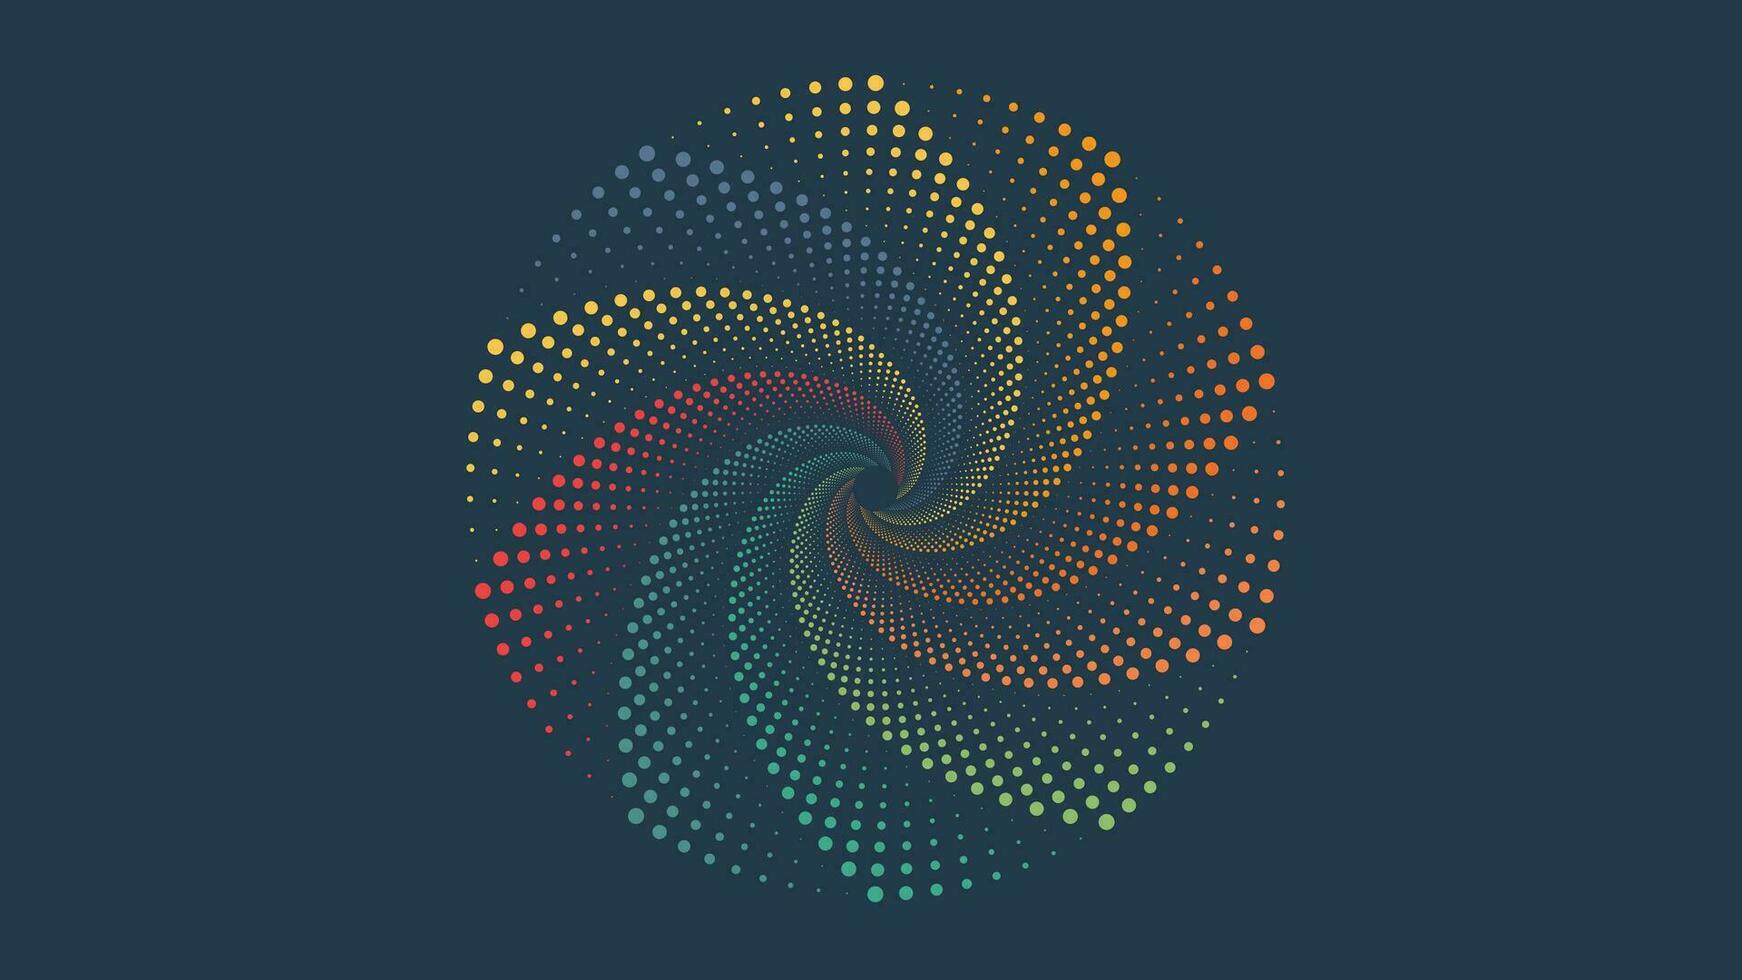 astratto spirale creativo vortice minimalista sfondo nel arcobaleno colore. vettore